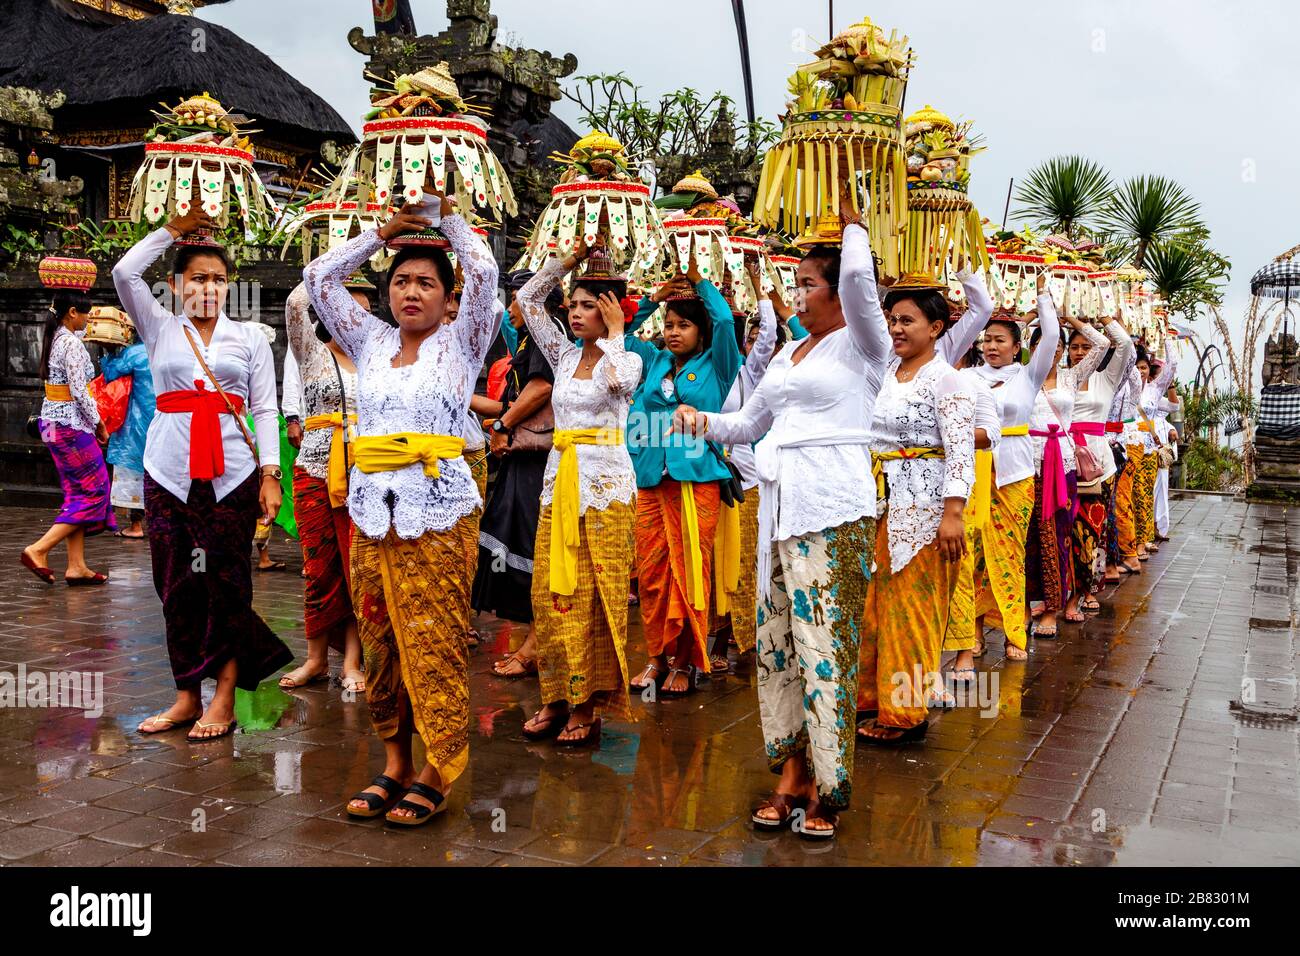 Eine Gruppe balinesischer Hindu-Frauen, die Tempelopfer bei der Zeremonie Batara Turun Kabeh, dem Besakih-Tempel, Bali, Indonesien, tragen. Stockfoto